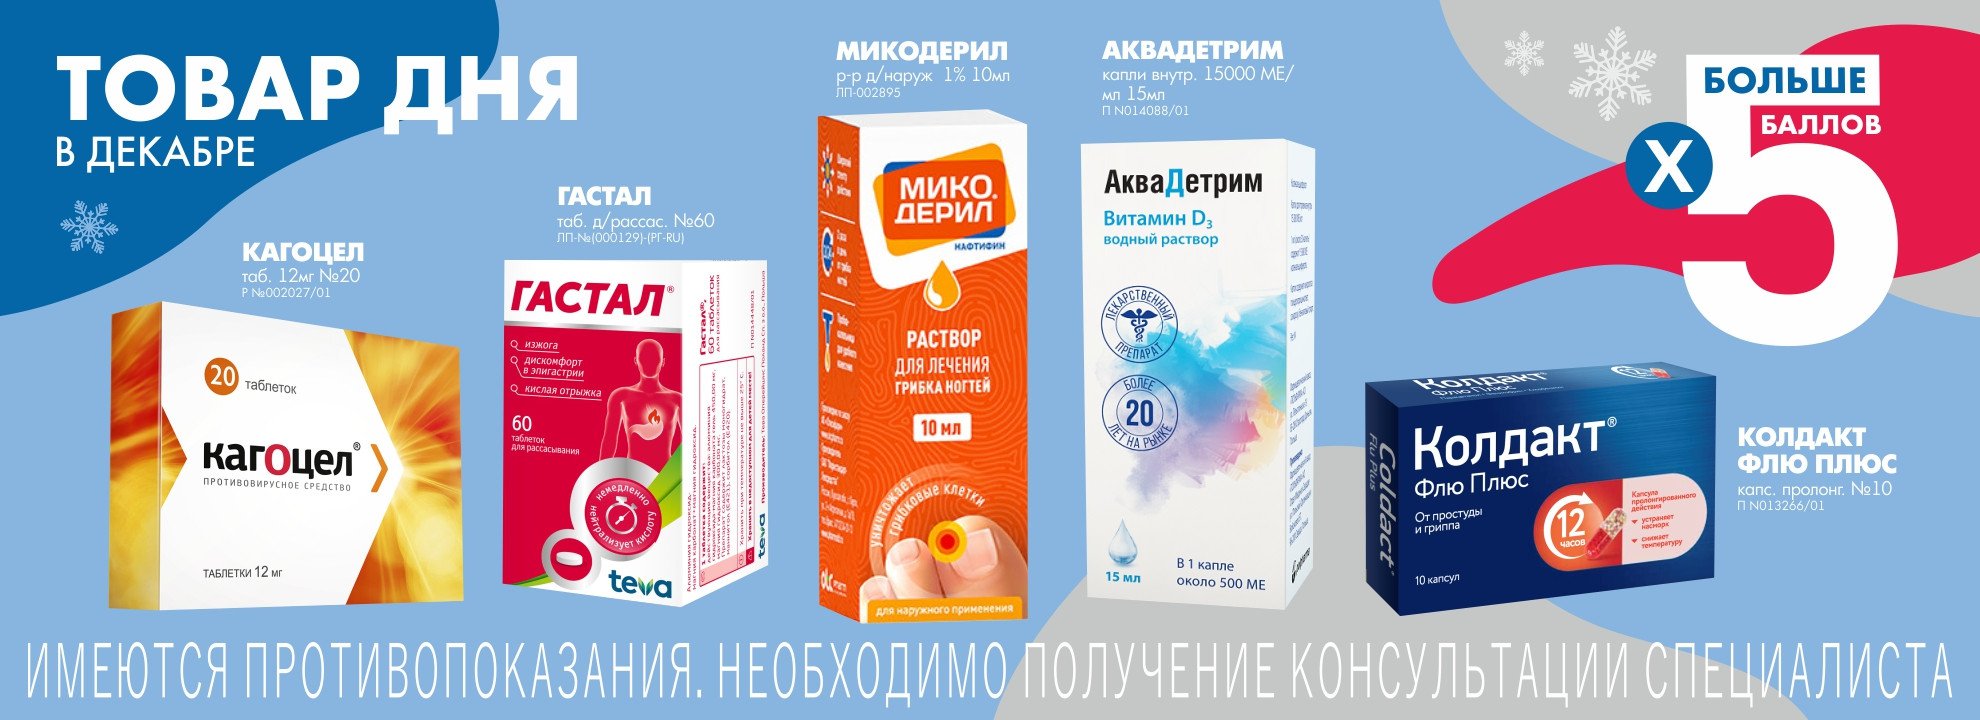 Остенил Плюс Цена В Аптеках Москвы